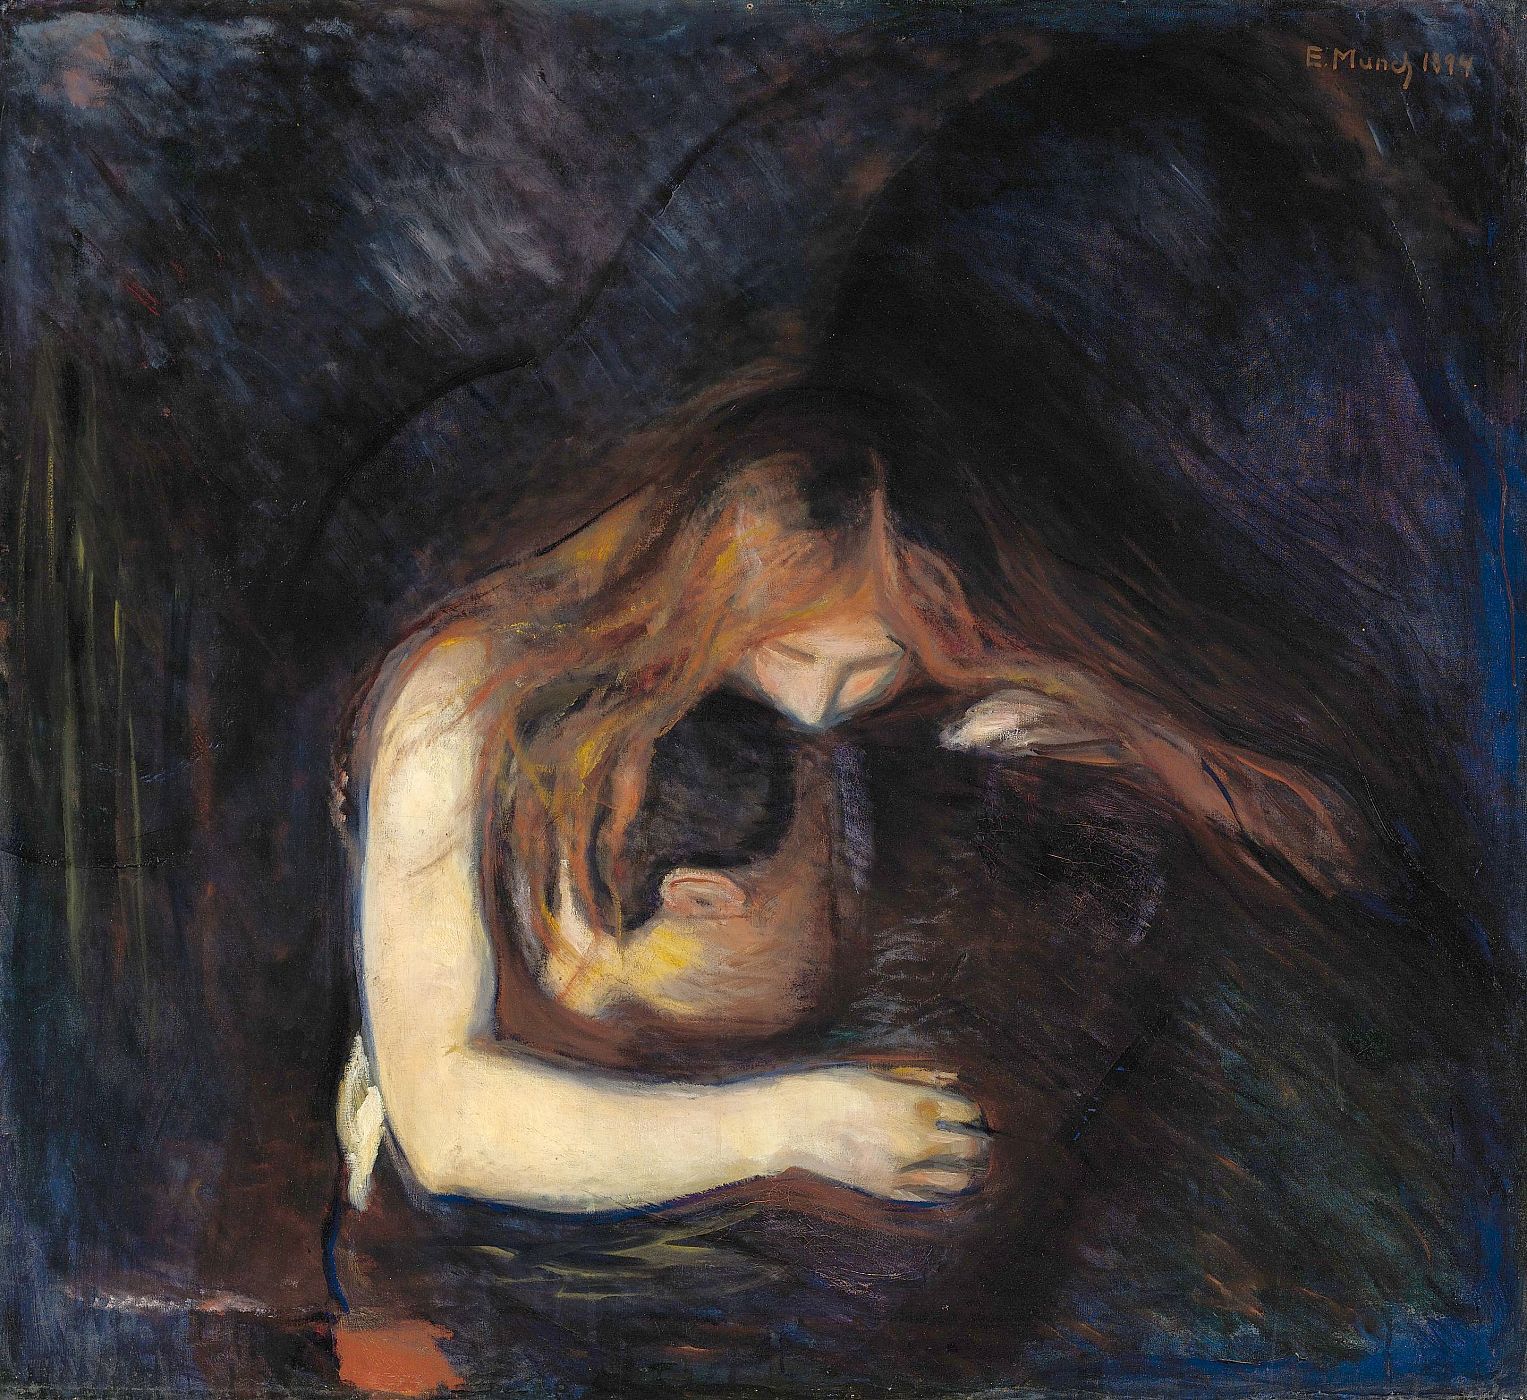 Se subasta el cuadro 'El Vampiro' de Edvard Munch en el Sotheby's de Nueva York